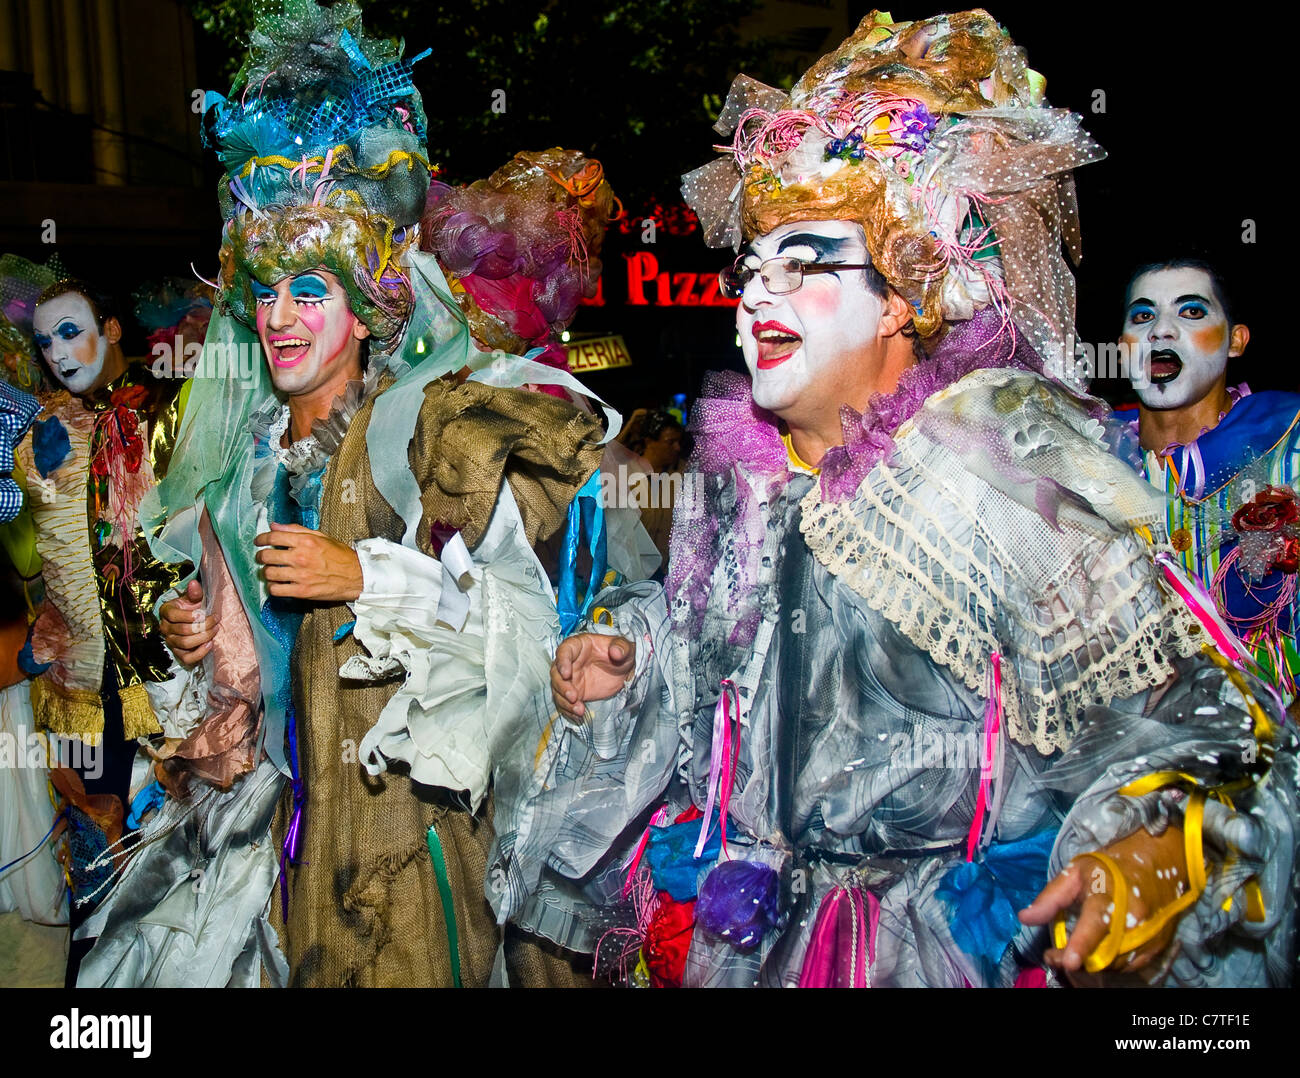 Les participants au carnaval costumé festival national annuel de l'Uruguay, qui s'est tenue à Montevideo en Uruguay Banque D'Images